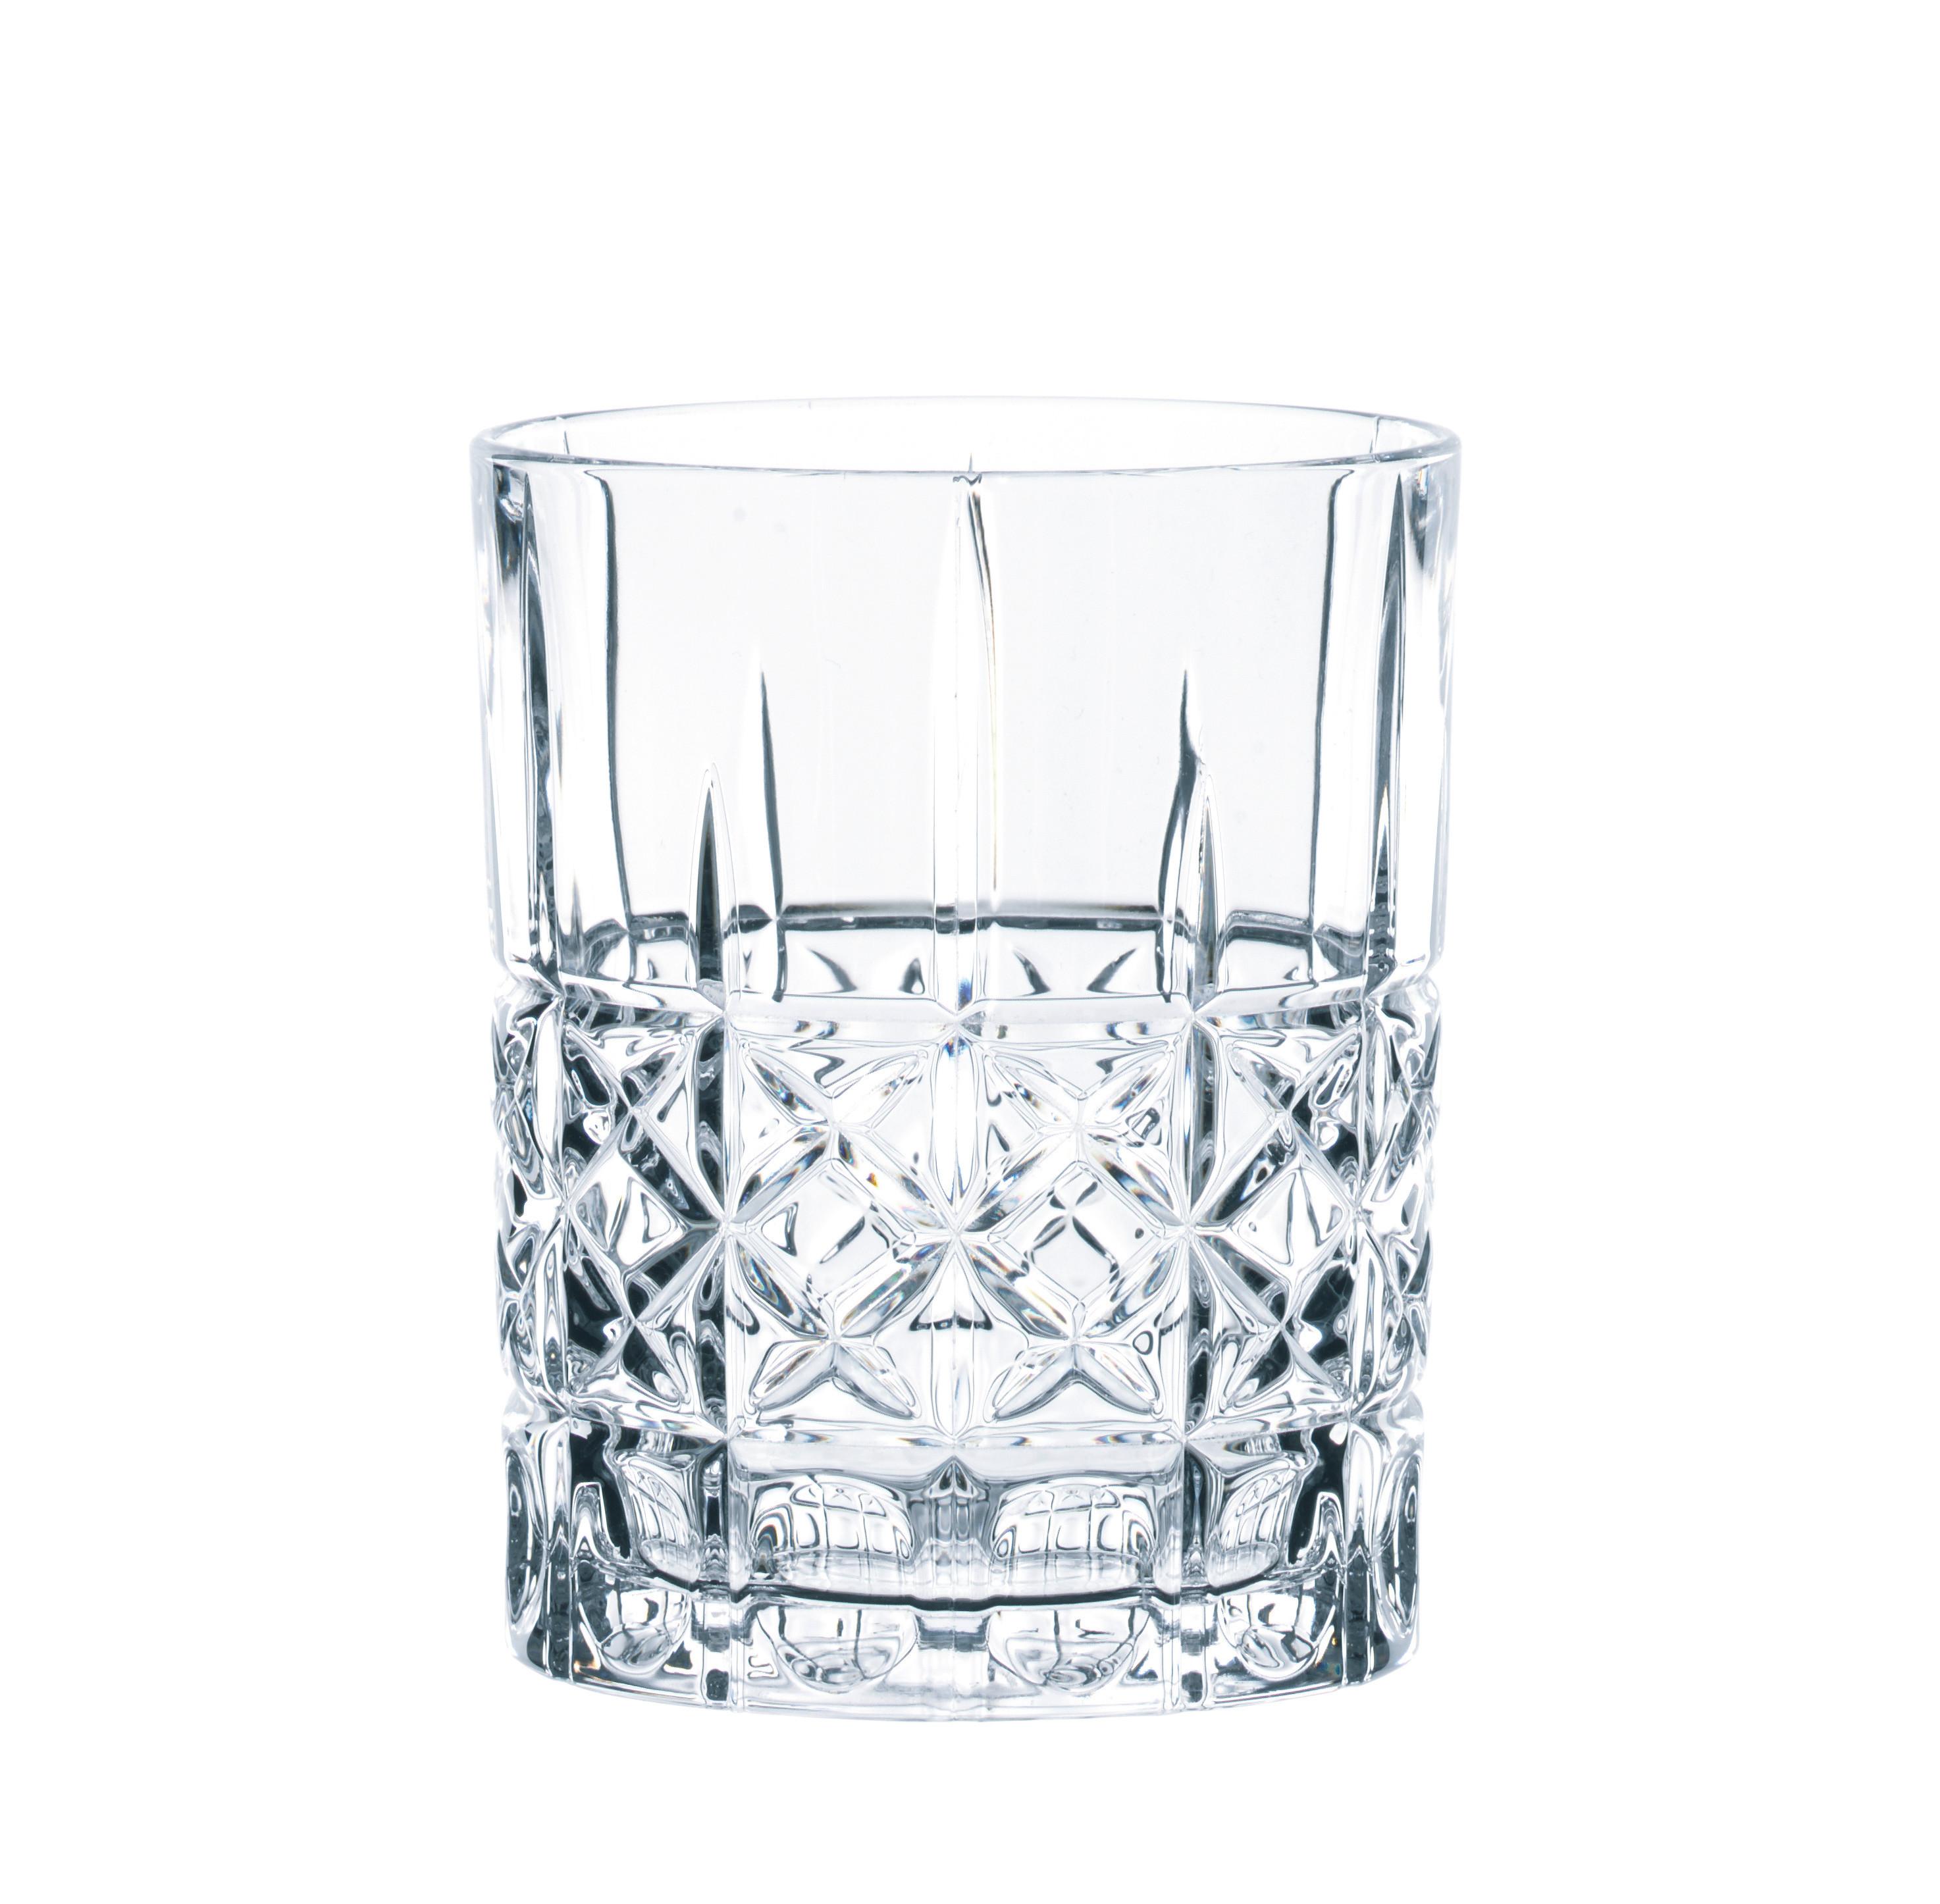 Gläserset Elegance, 4-teilig - Klar, KONVENTIONELL, Glas (8,2/10,2/8,2cm) - Spiegelau